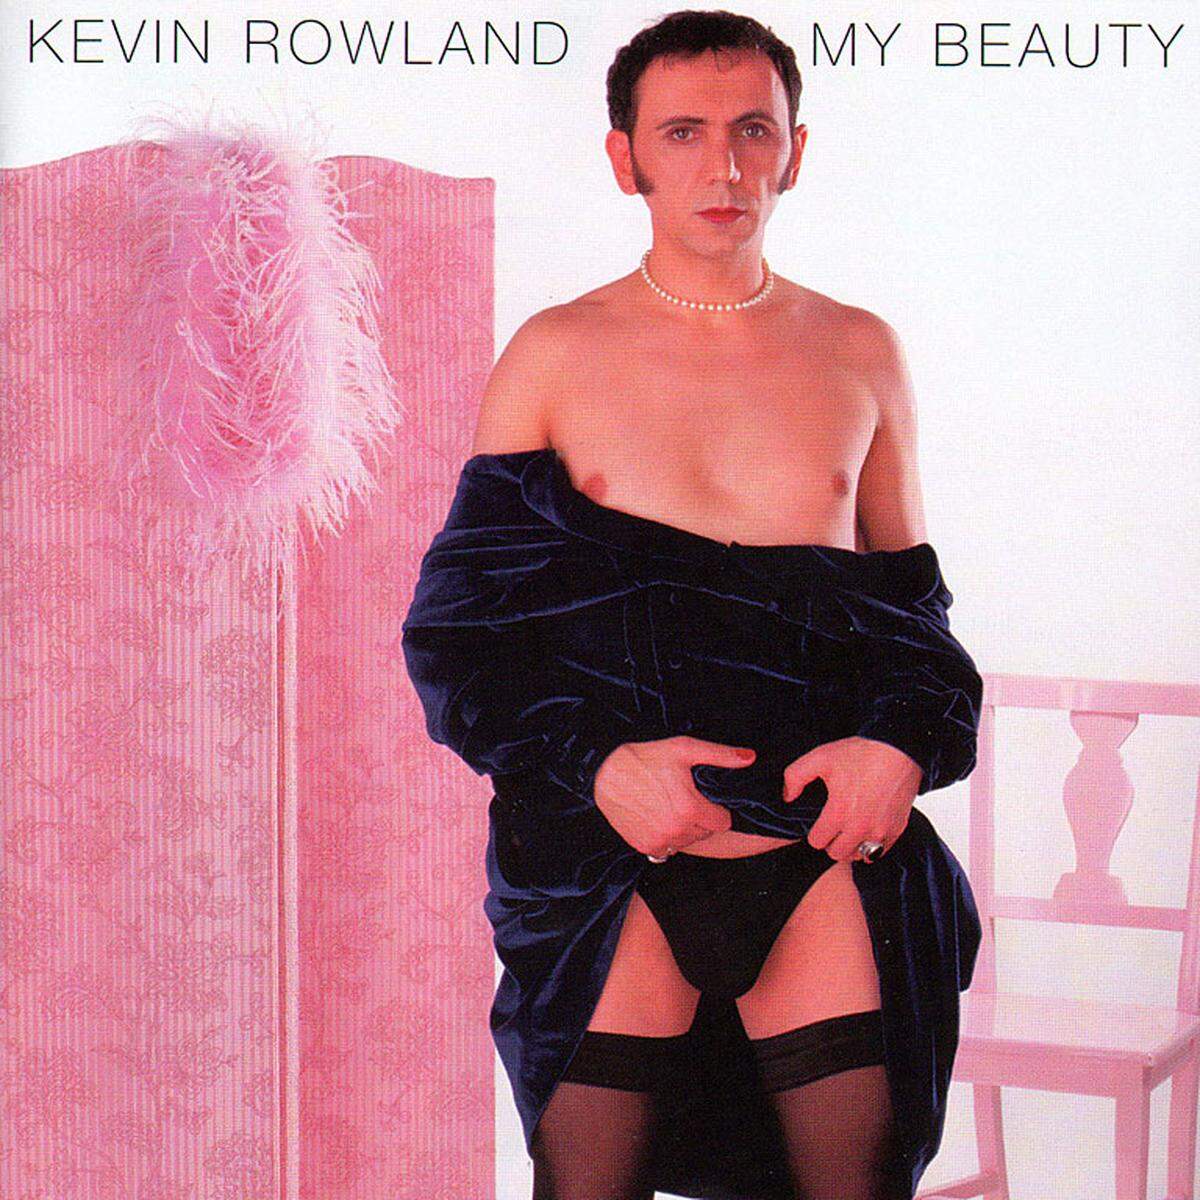 Kevin Rowland - My Beauty (1999)